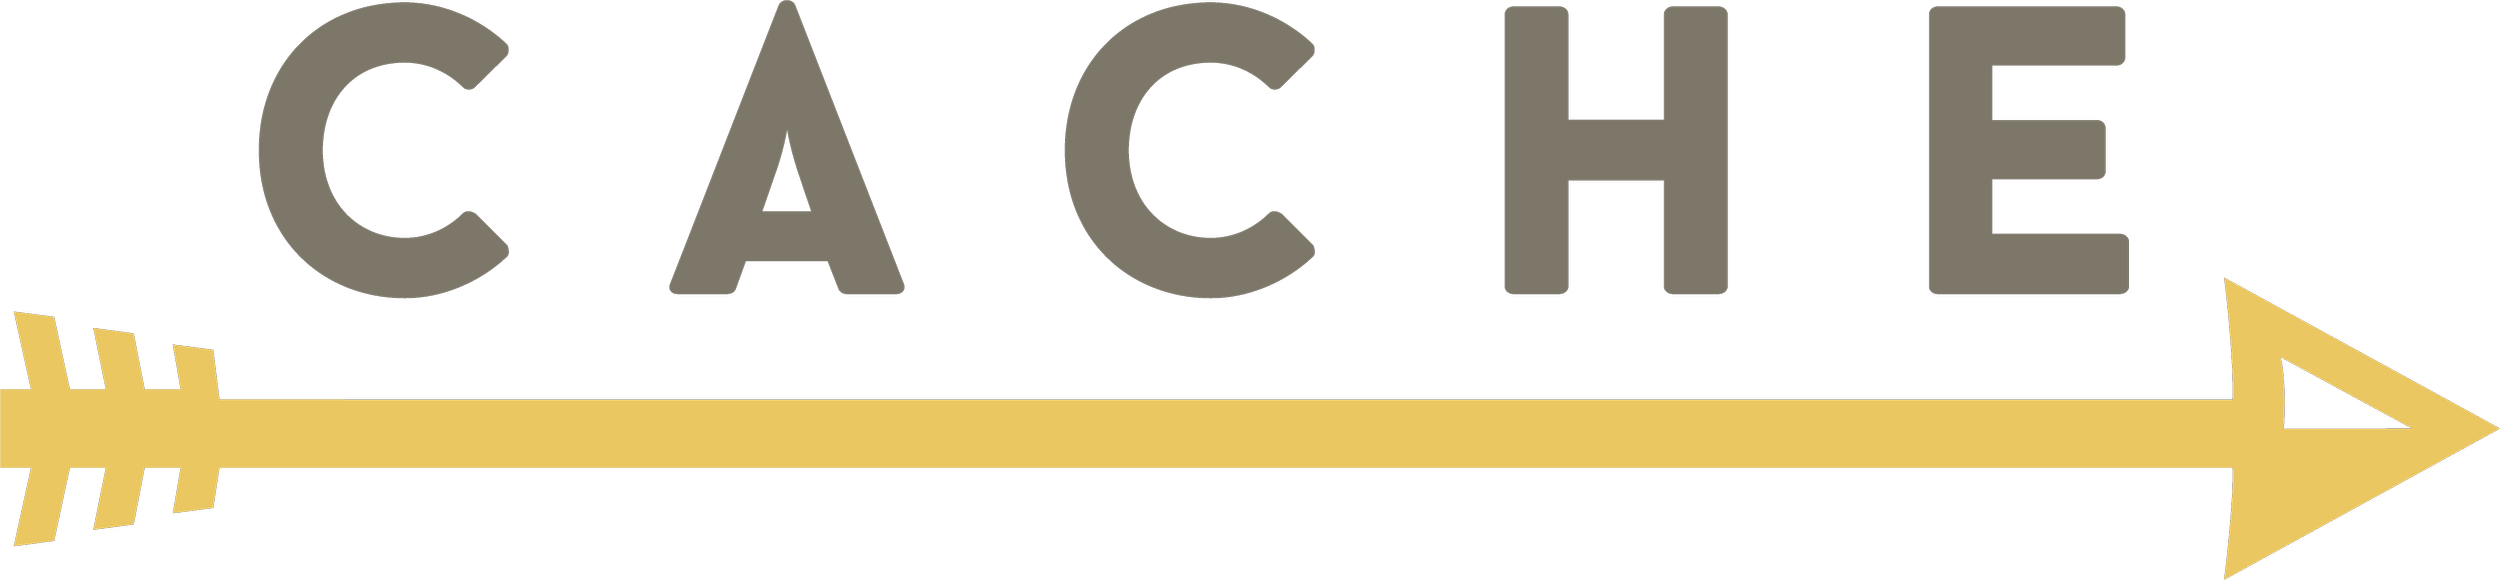 Cache Logo landscape.png